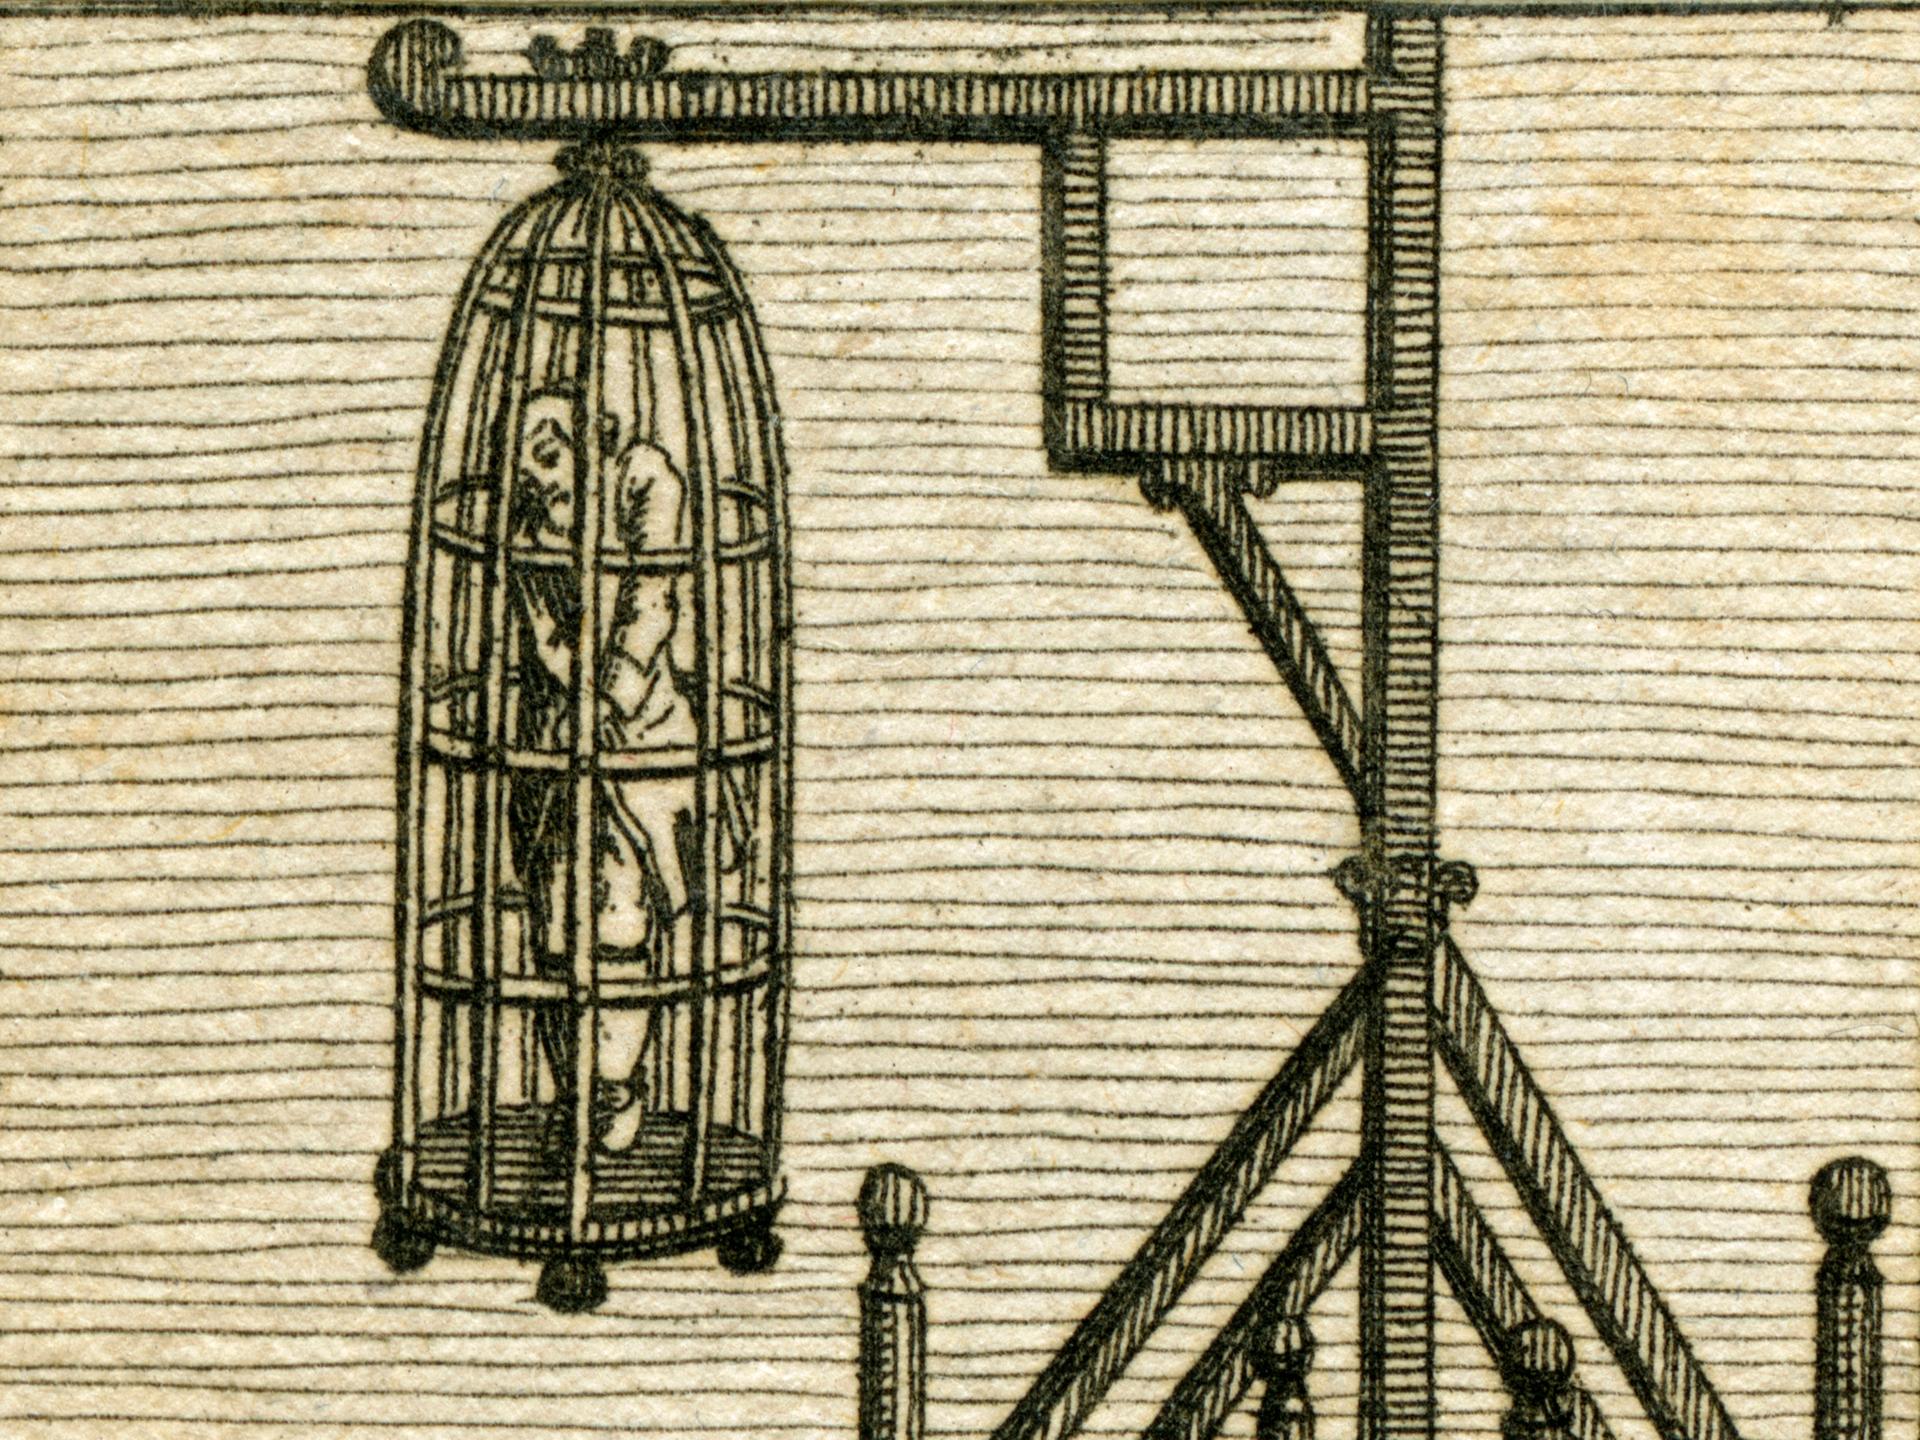 Kupferstich aus : J.S. Stoy , Bilder - Akademie für die Jugend , Band 2 , Nürnberg , 1784, gestochen von Johann Georg Penzel
Er zeigt den Käfig, in dem der Leichnam von Joseph Süßkind Oppenheimer öffentlich zur Schau gestellt wurde. 